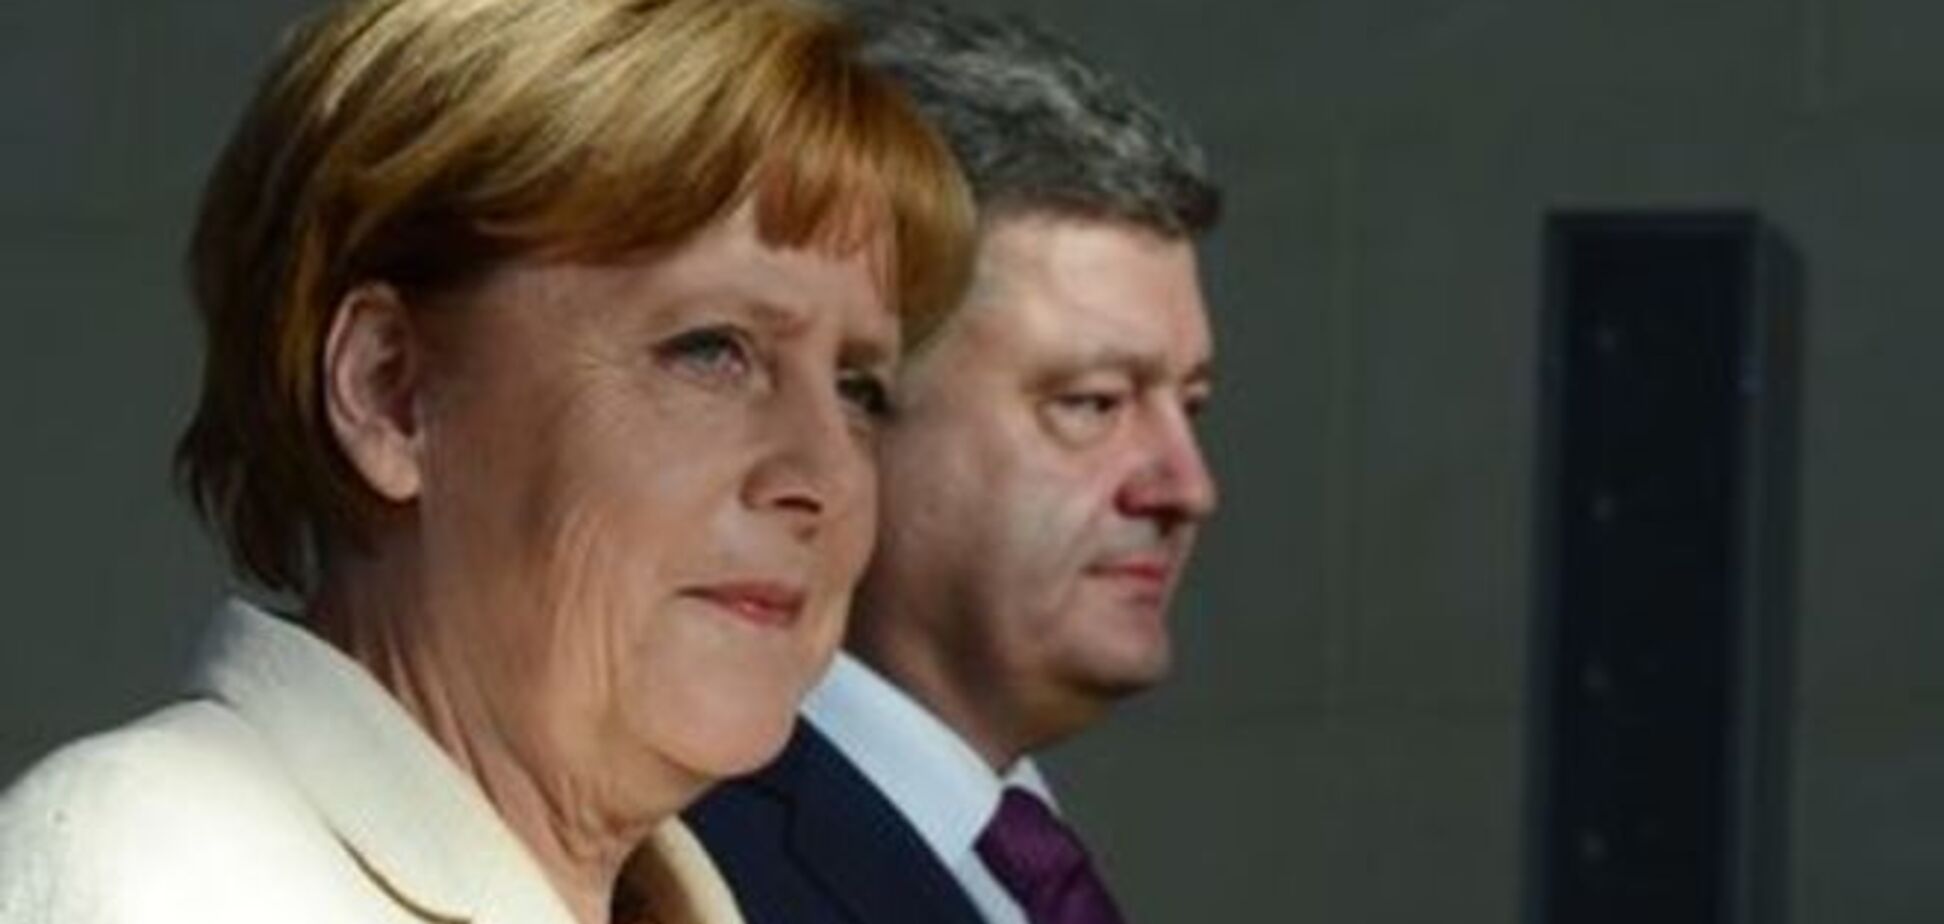  Порошенко сообщил Меркель о своей готовности работать в трехстороннем формате для реализации Мирного плана